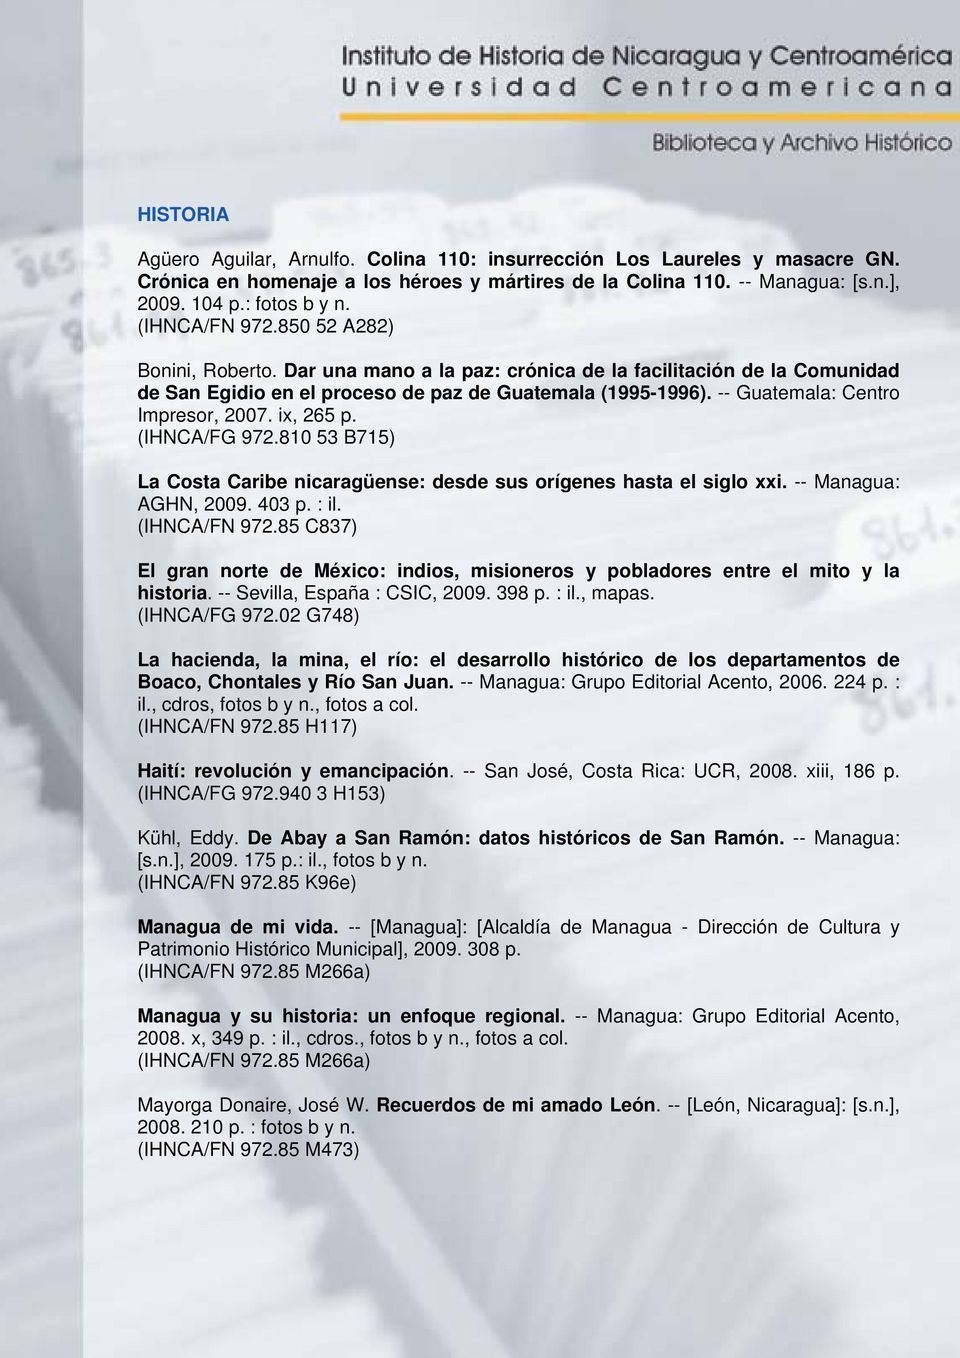 -- Guatemala: Centro Impresor, 2007. ix, 265 p. (IHNCA/FG 972.810 53 B715) La Costa Caribe nicaragüense: desde sus orígenes hasta el siglo xxi. -- Managua: AGHN, 2009. 403 p. : il. (IHNCA/FN 972.